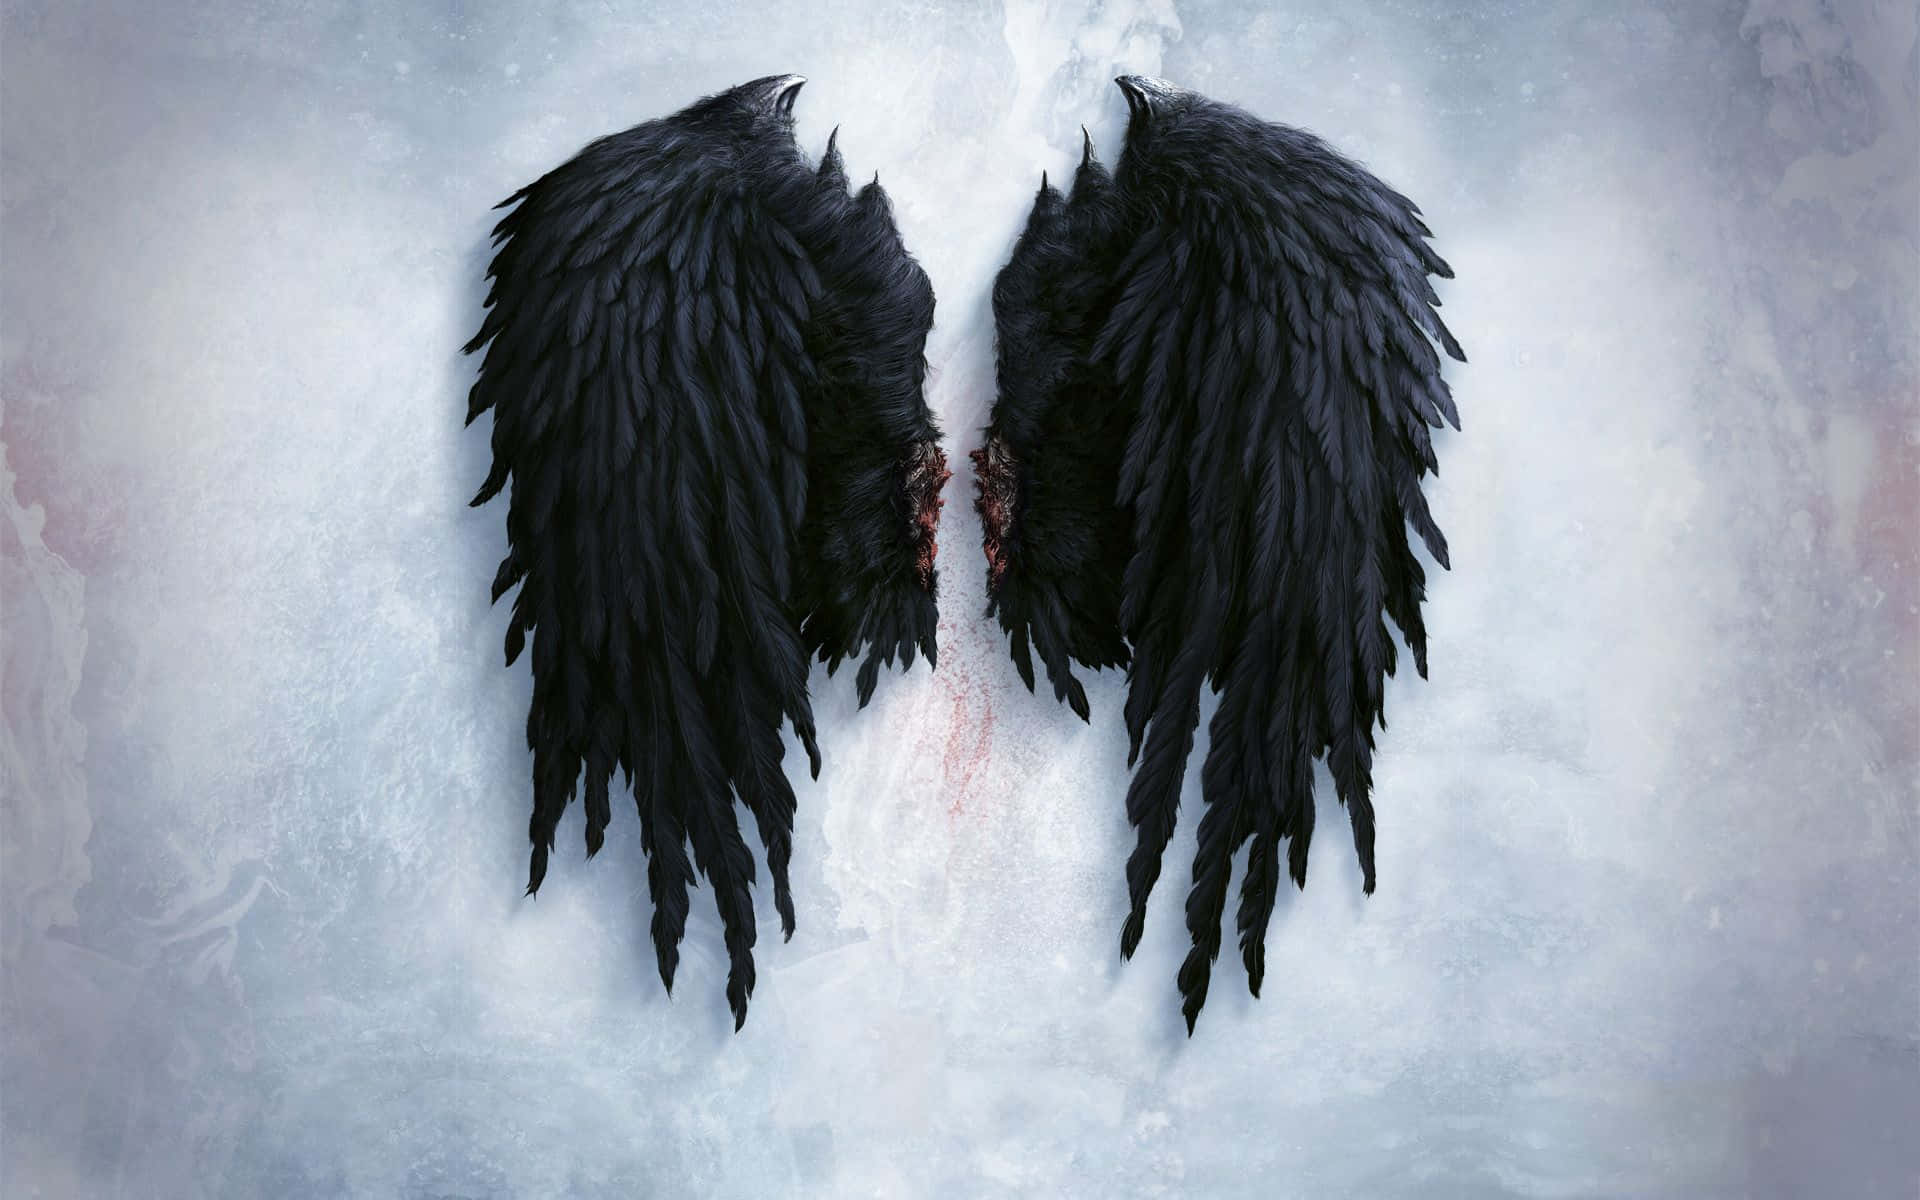 "Black Angel Wings - Freshly Fallen From Heaven"